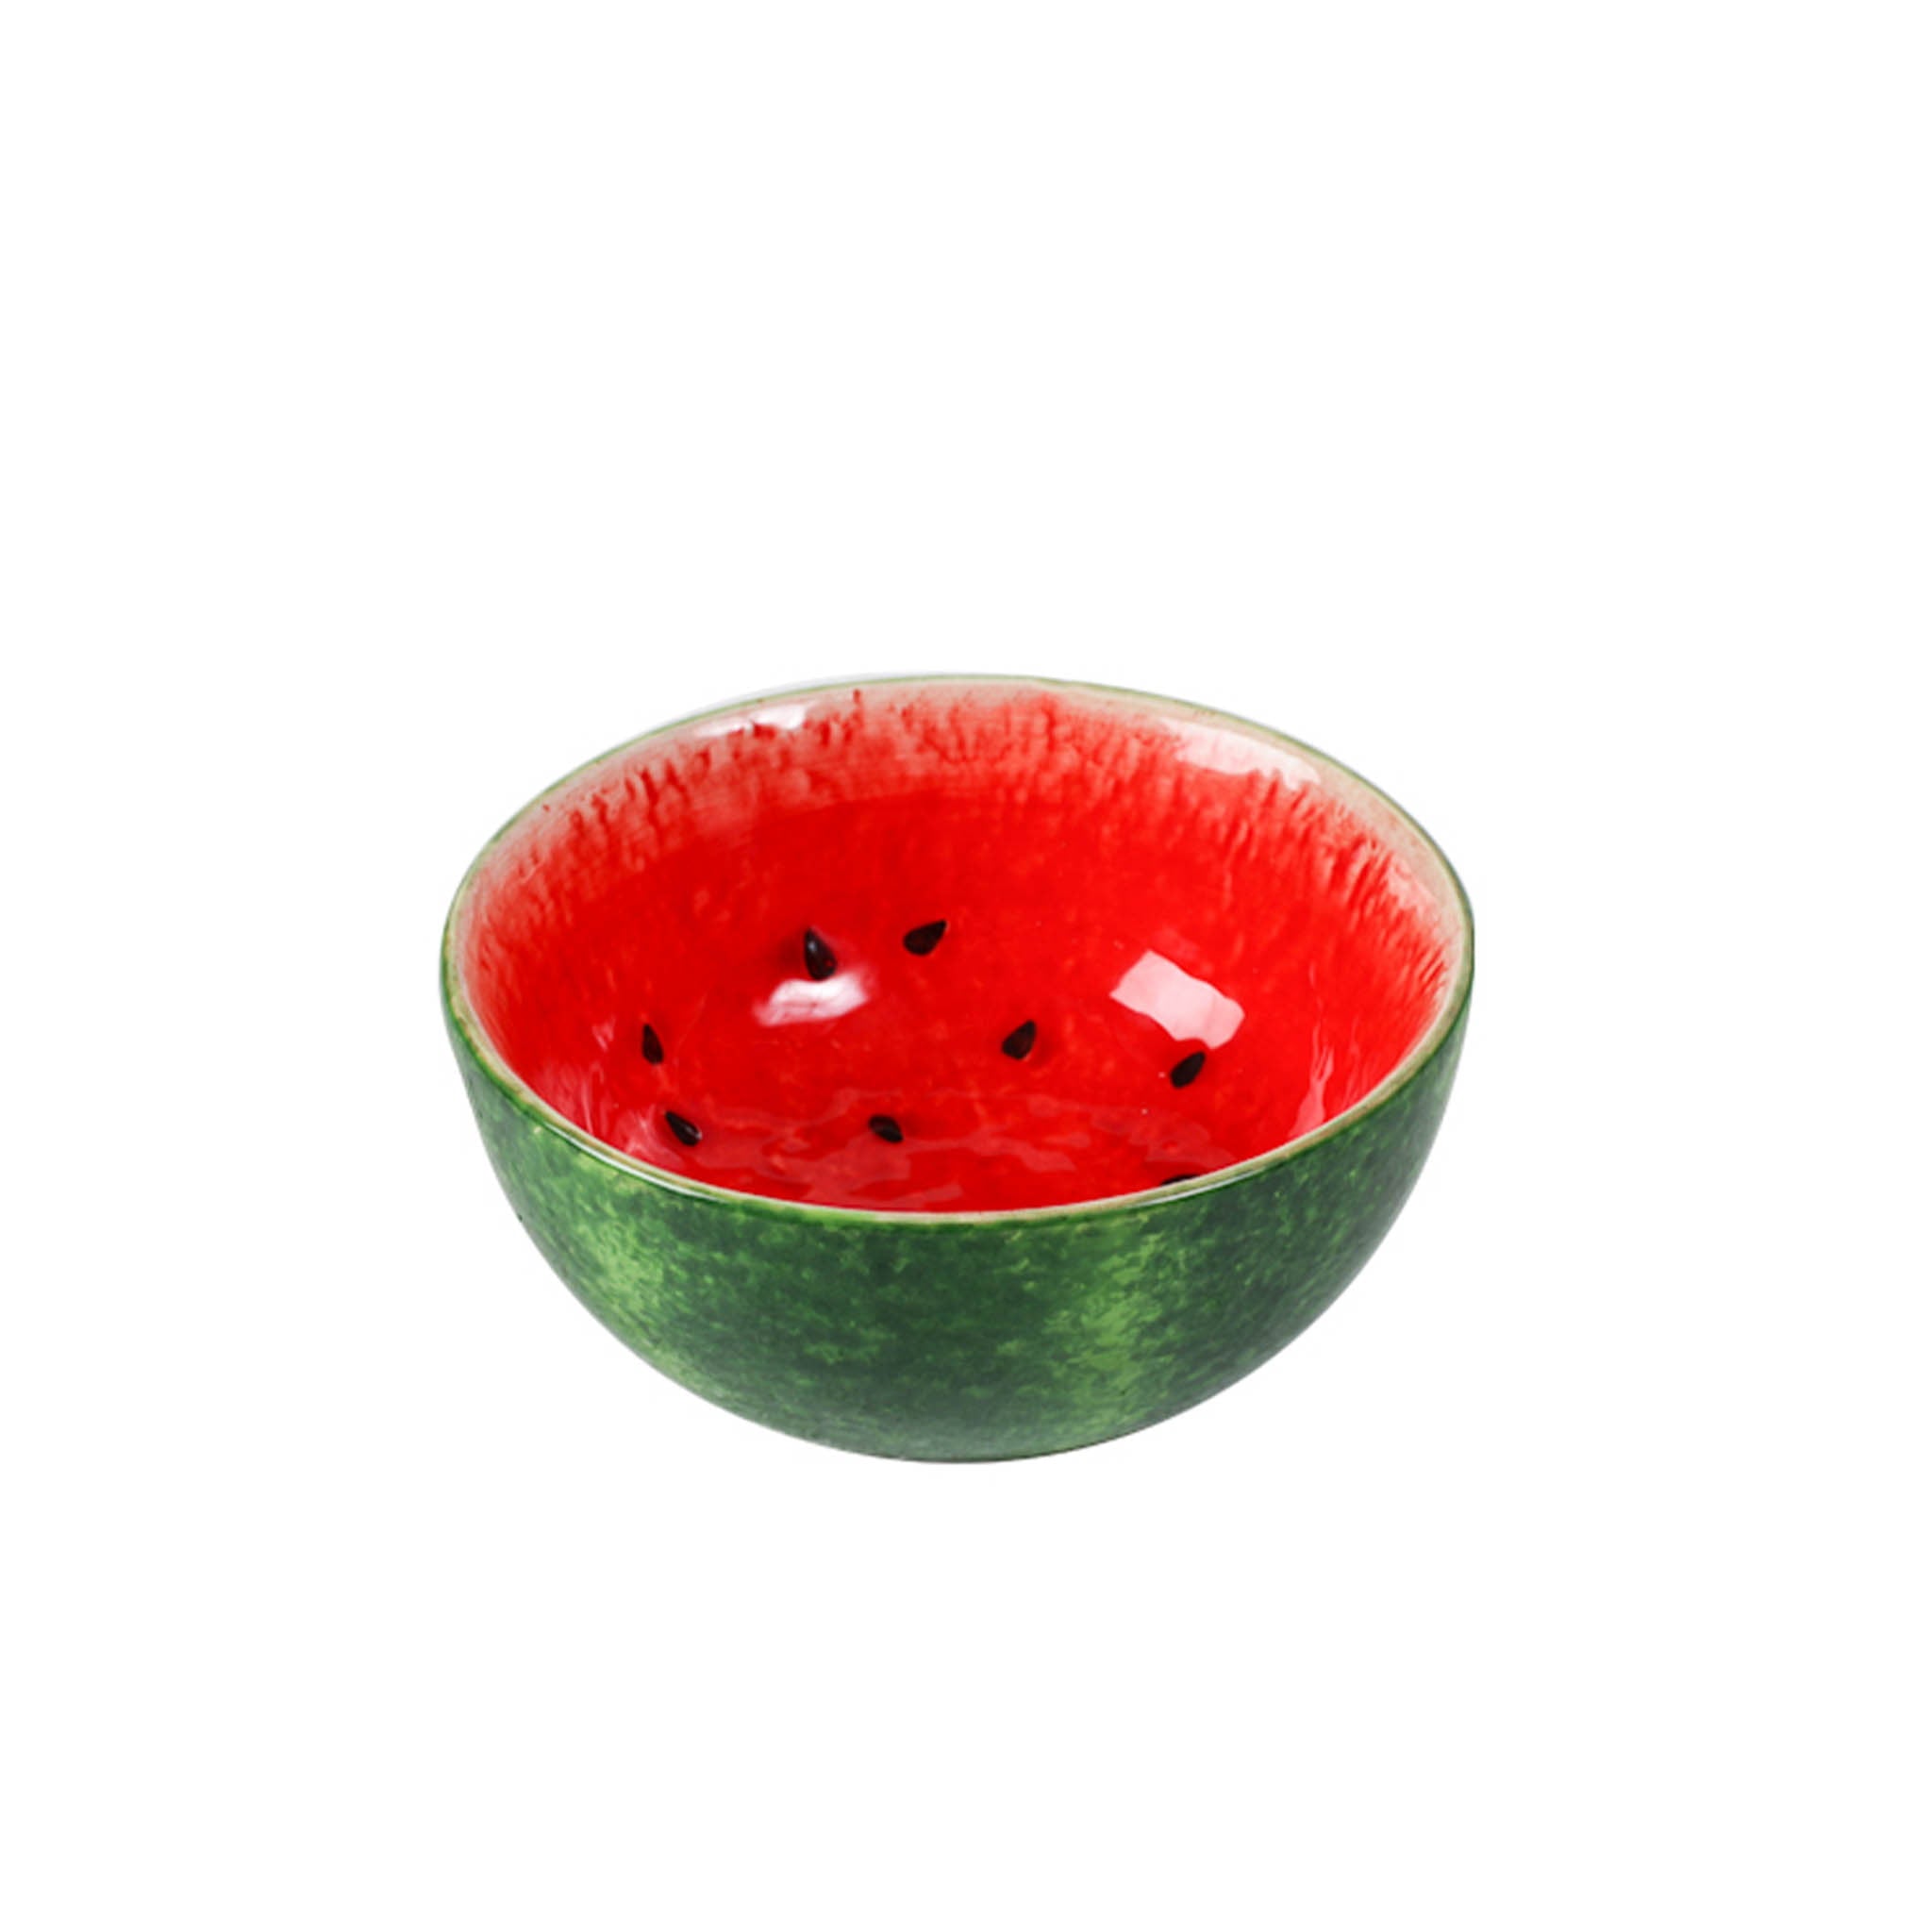 Rockett St George Watermelon Bowl, 14.5cm